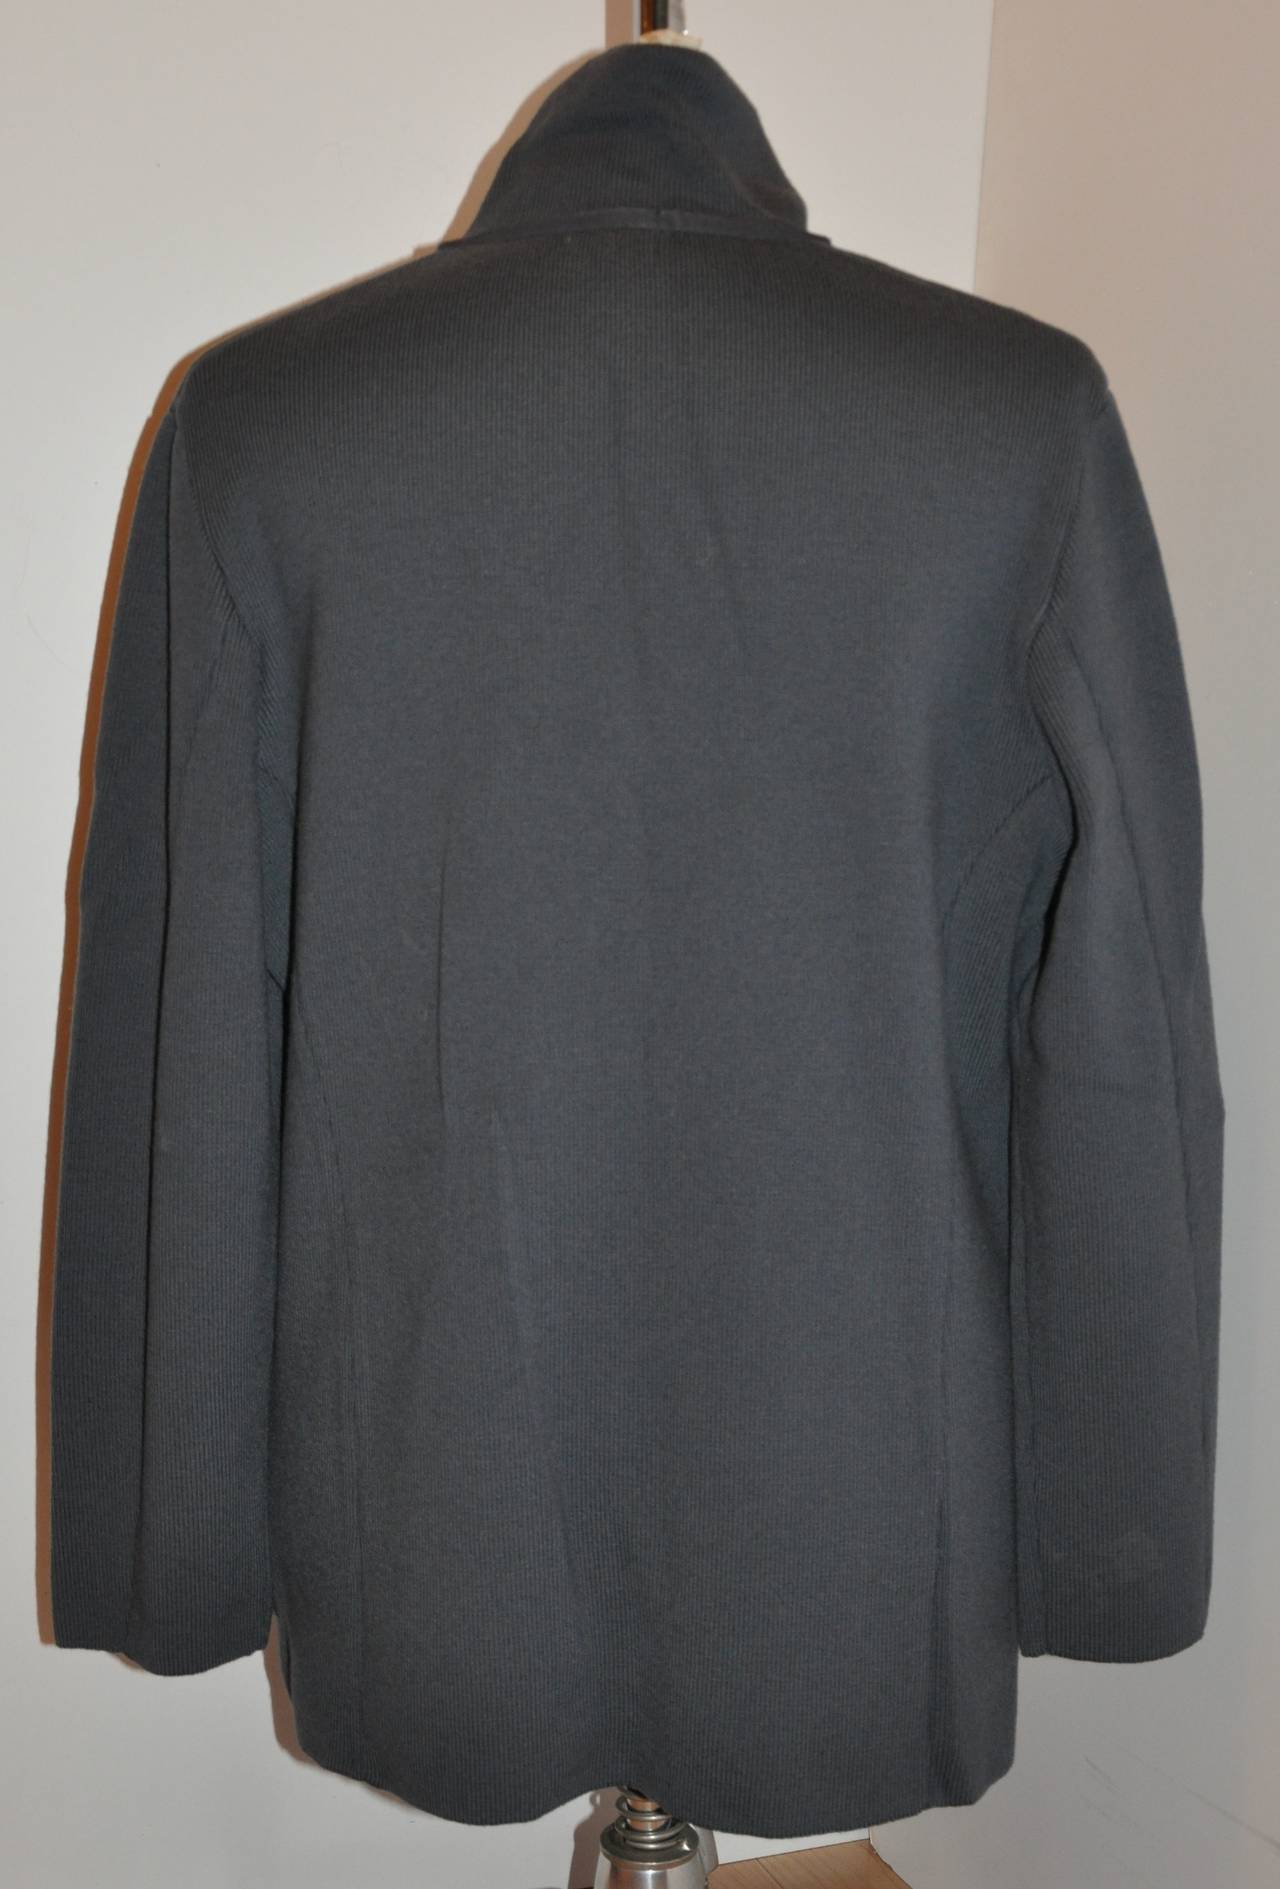 Gianfranco Ferre wunderschön geschnittene graue mittelschwere Pulloverjacke aus einer Wollmischung für Herren mit zwei (2) aufgesetzten Taschen vorne. Die Schultern sind leicht drapiert und haben einen Durchmesser von 19 1/2